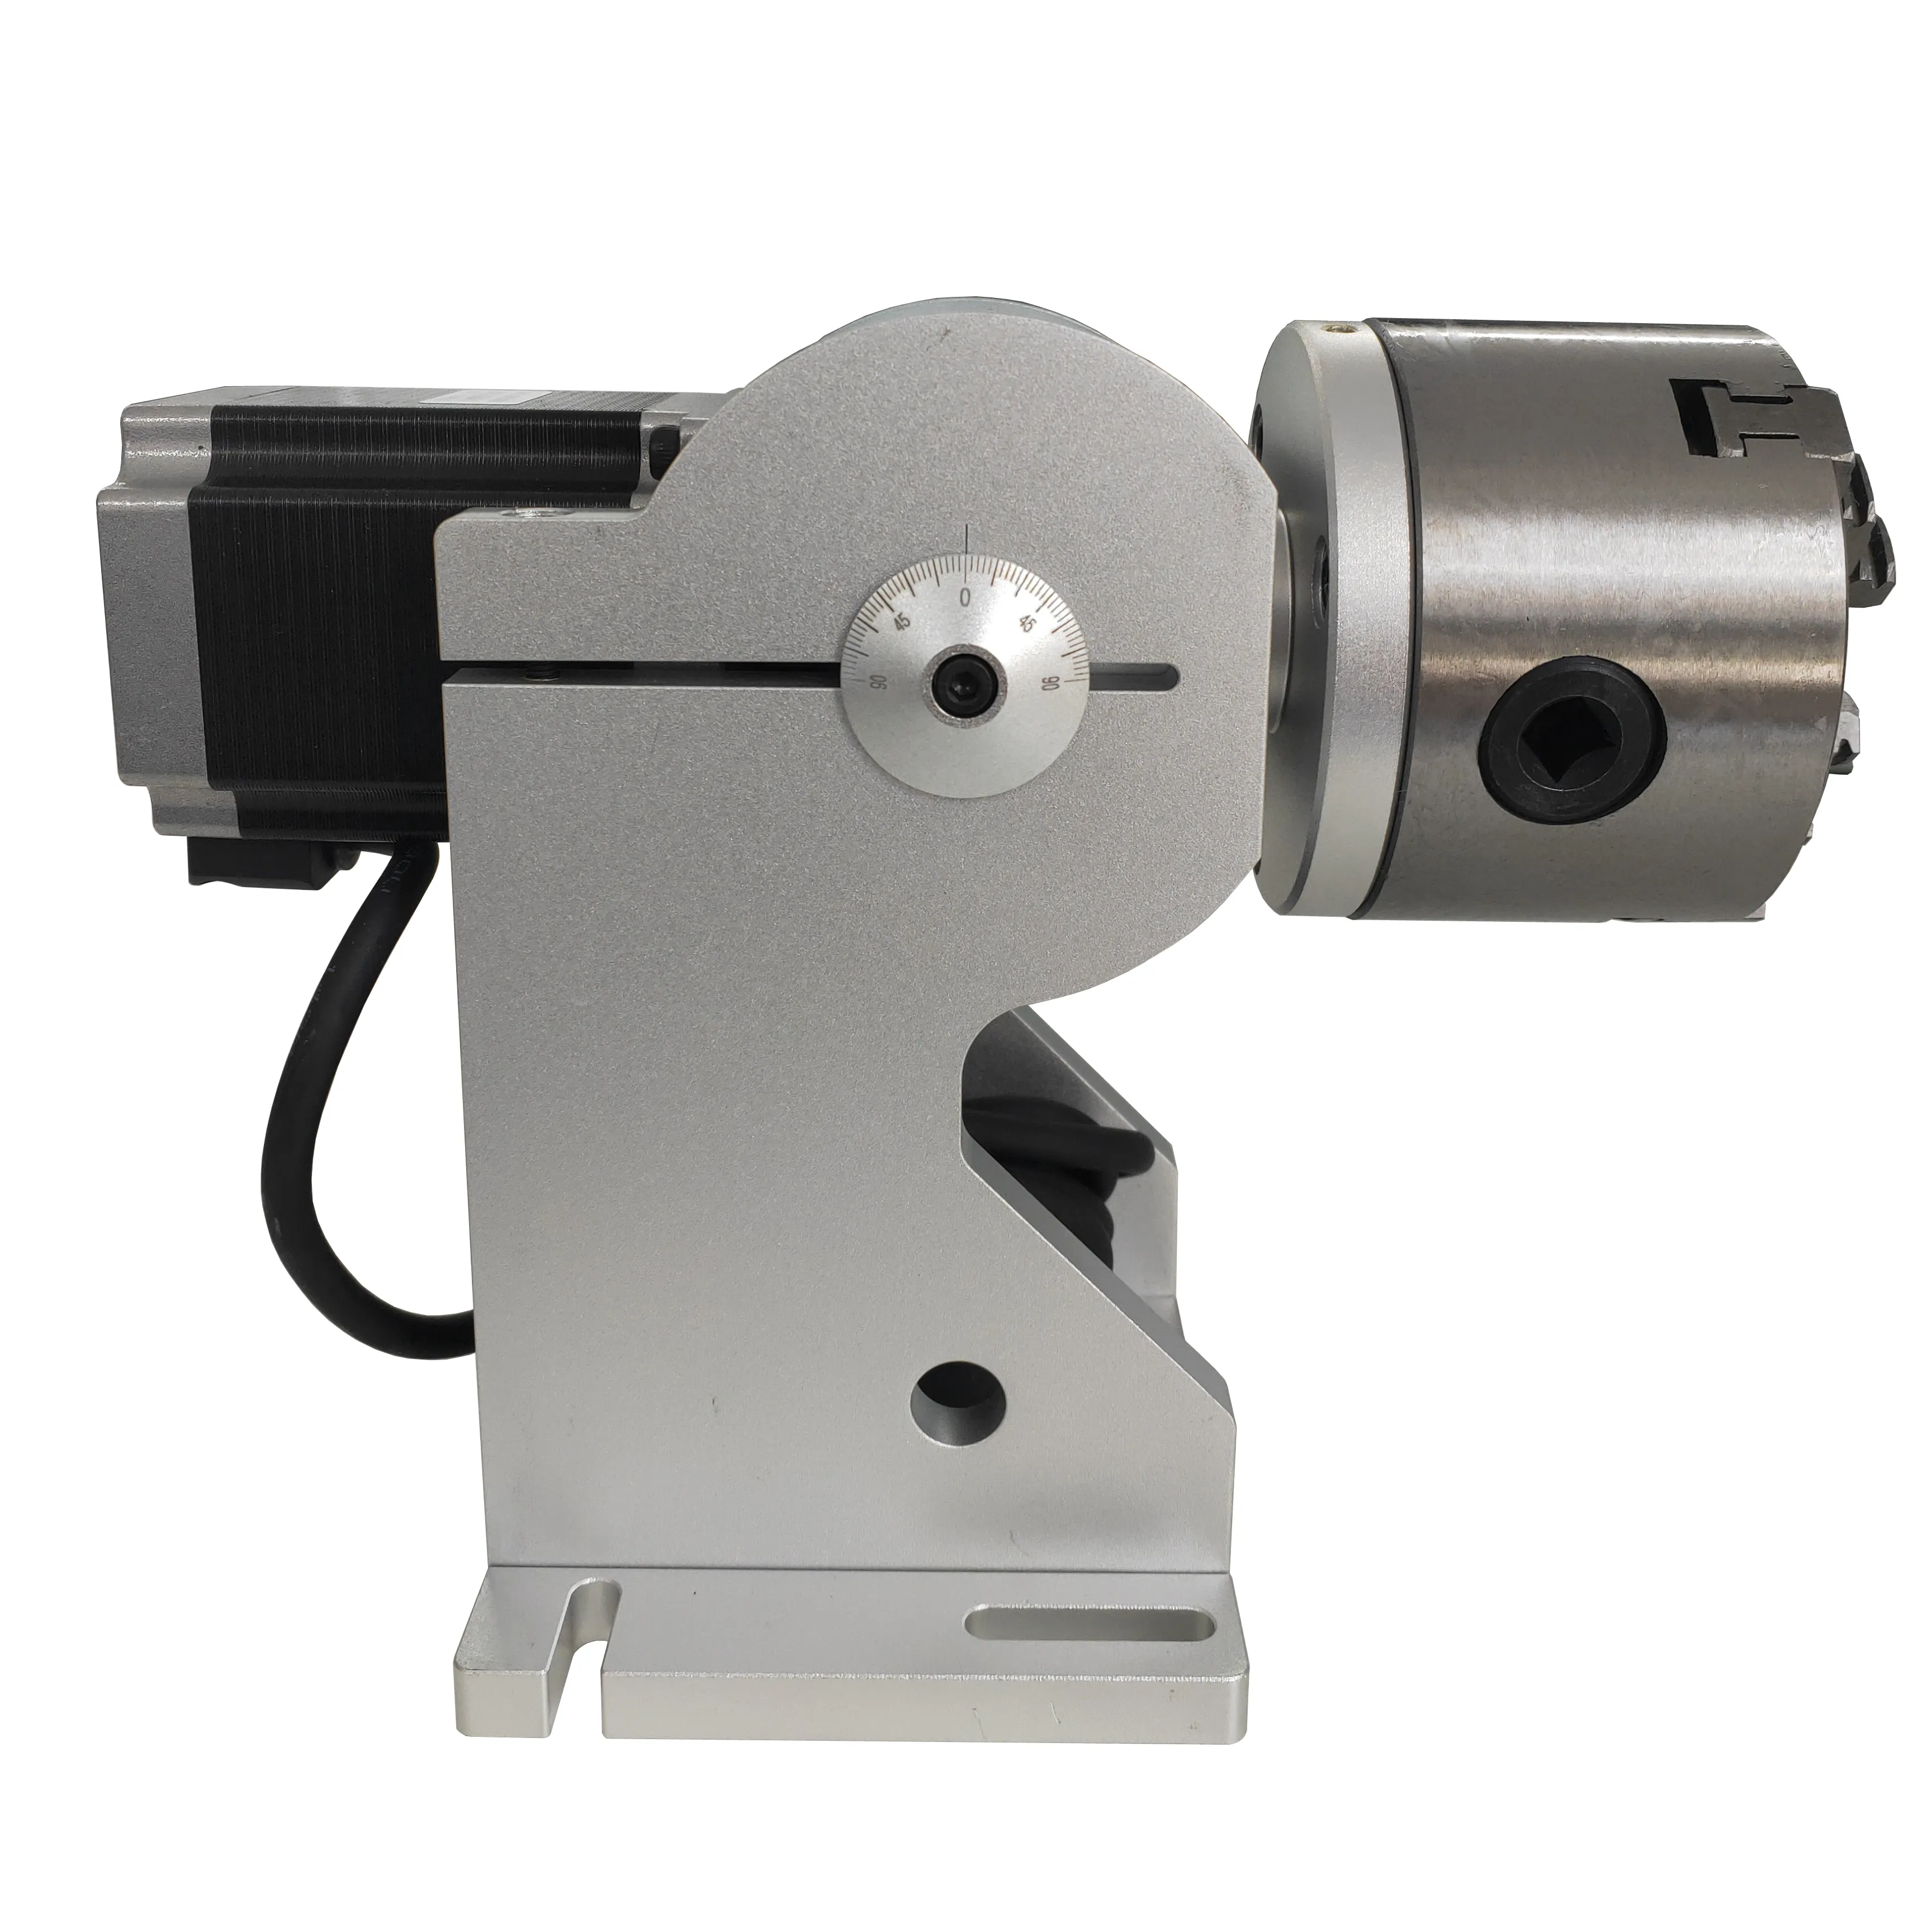 Laser ausrüstung teile ersatzteile von laser kennzeichnung maschine neueste JPT faser laser quelle Rotary chuck Dreh Gerät